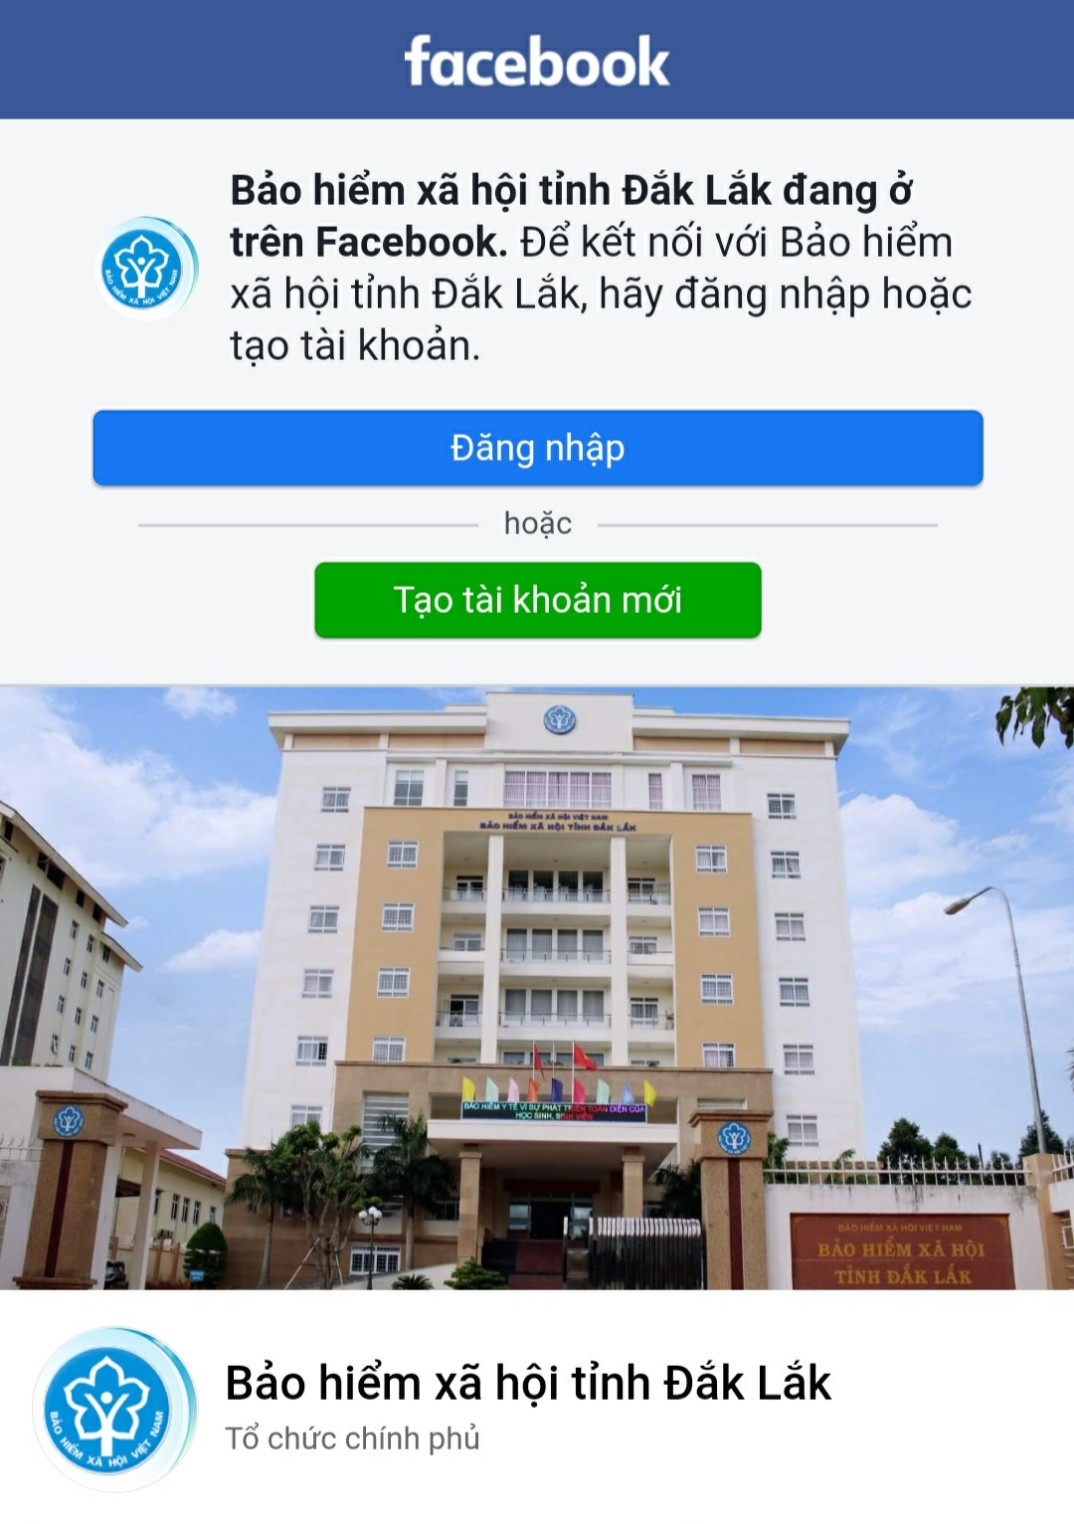 BHXH Đắk Lắk lập trang thông tin Zalo và Fanpage để cung cấp thông tin cho người dân